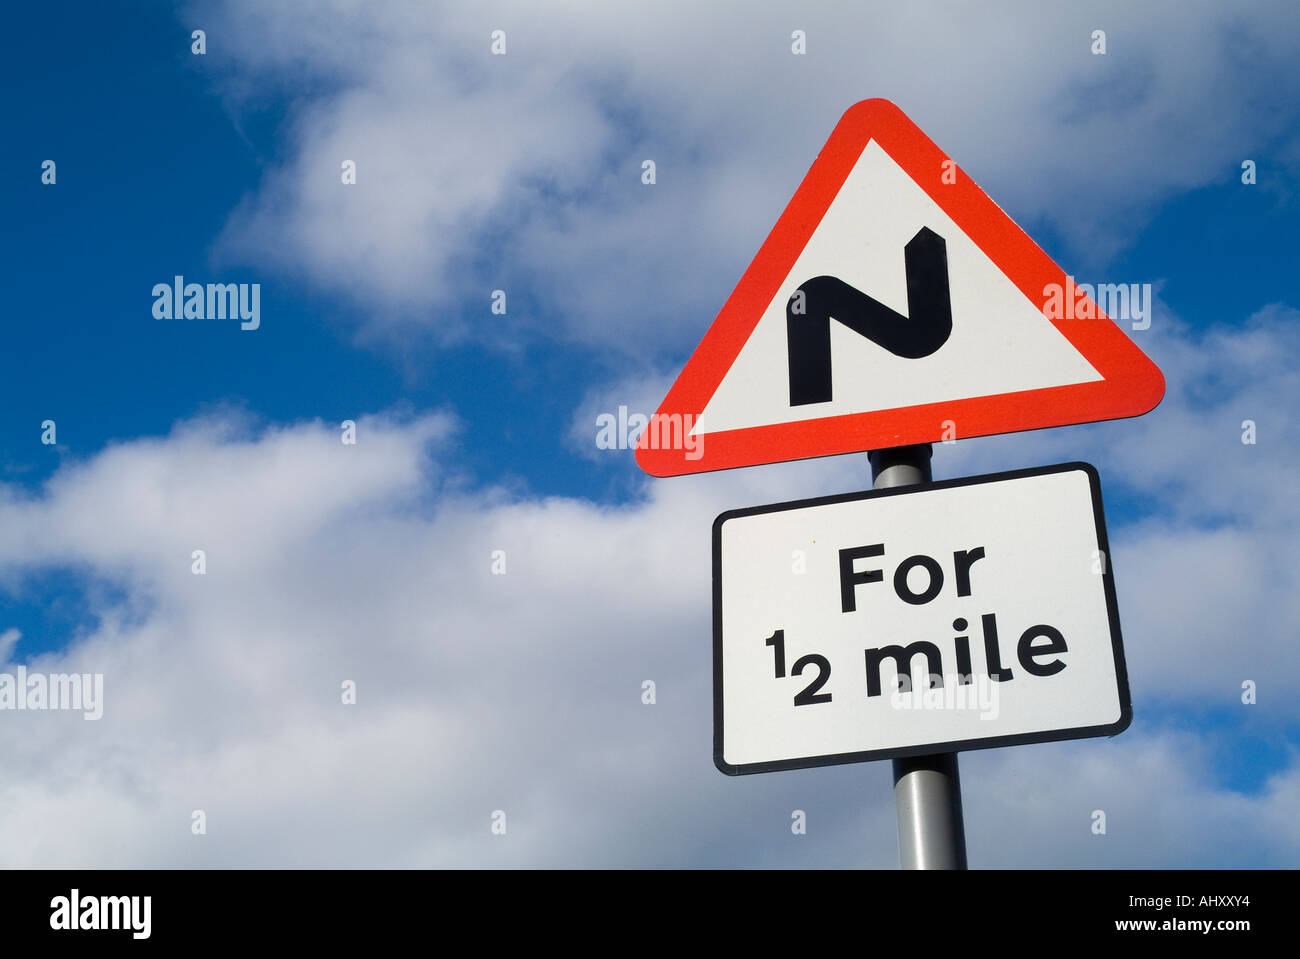 dh Red Triangle roadSigns ROADSIGN Royaume-Uni virages de route tordus pour panneau de signalisation de la piste de 1/2 km indiquant des signes d'avertissement Banque D'Images